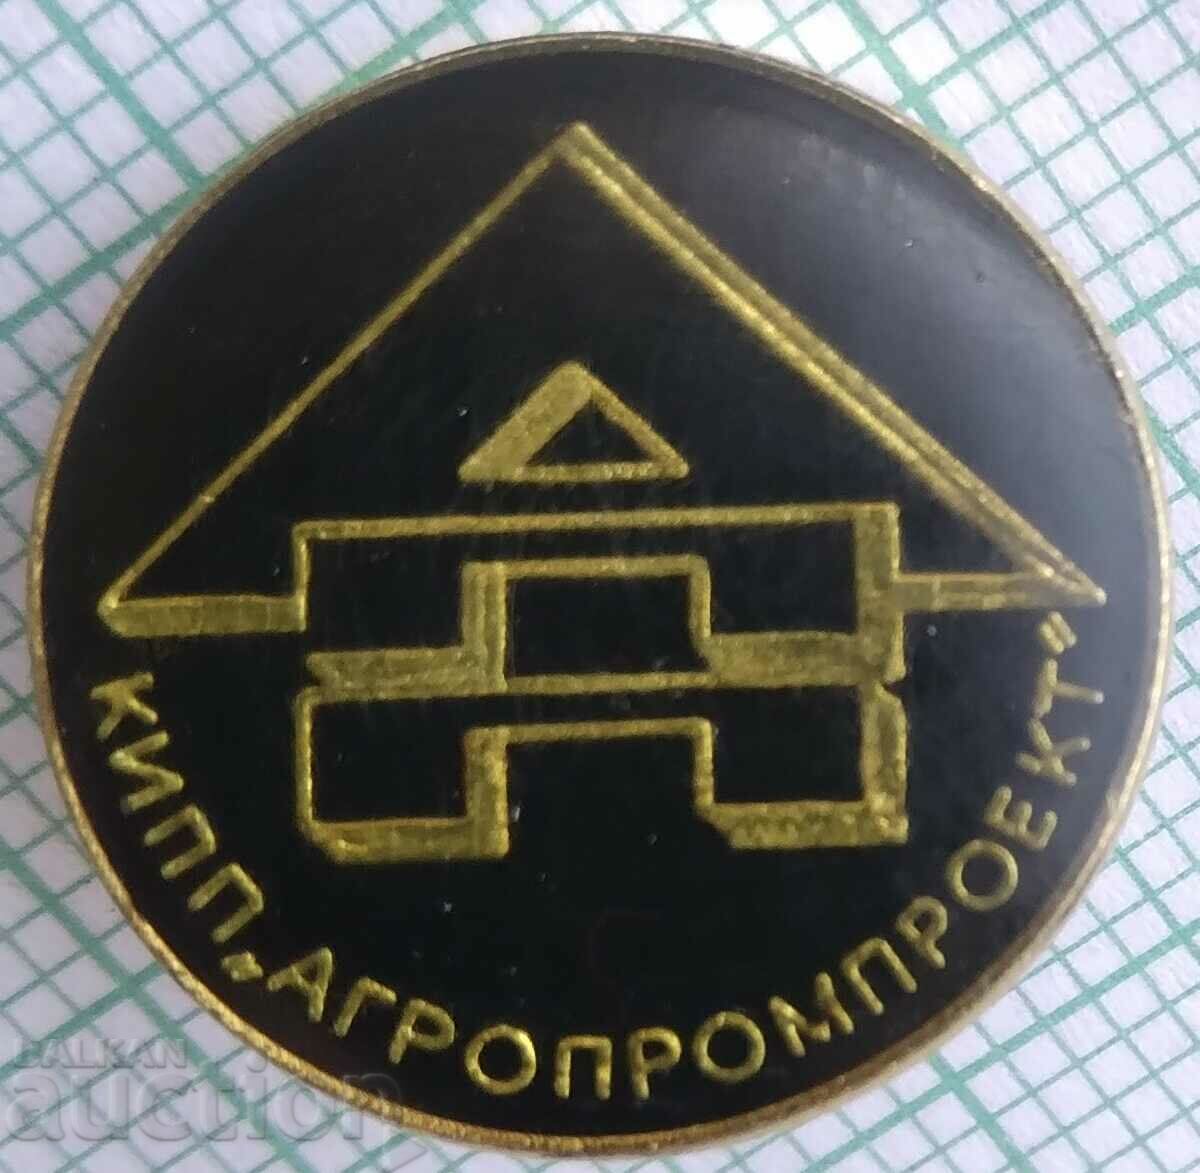 16347 Badge - KIPP Agropromproekt